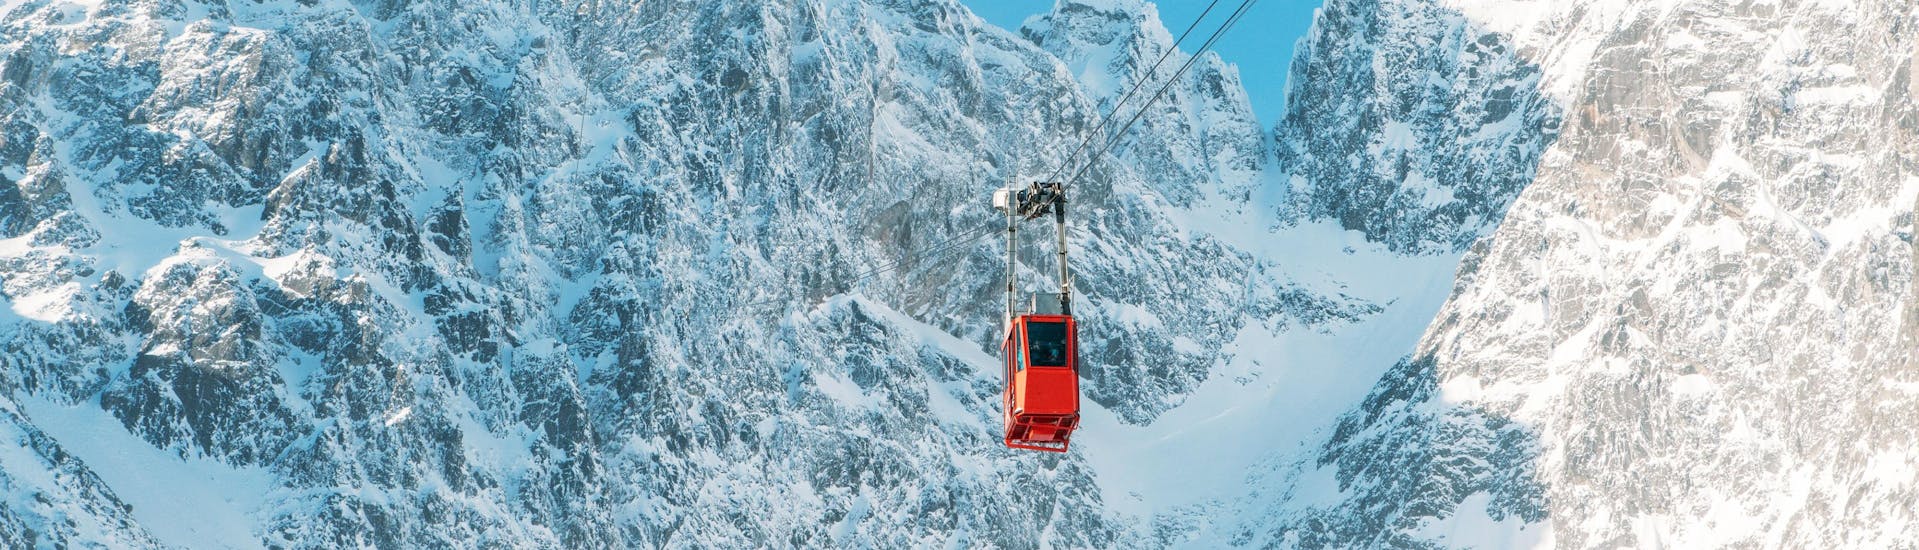 Eine rote Gondel, die auf einen Gipfel im Skigebiet Tatranská Lomnica fährt, wo die örtlichen Skischulen ihre Skikurse anbieten.